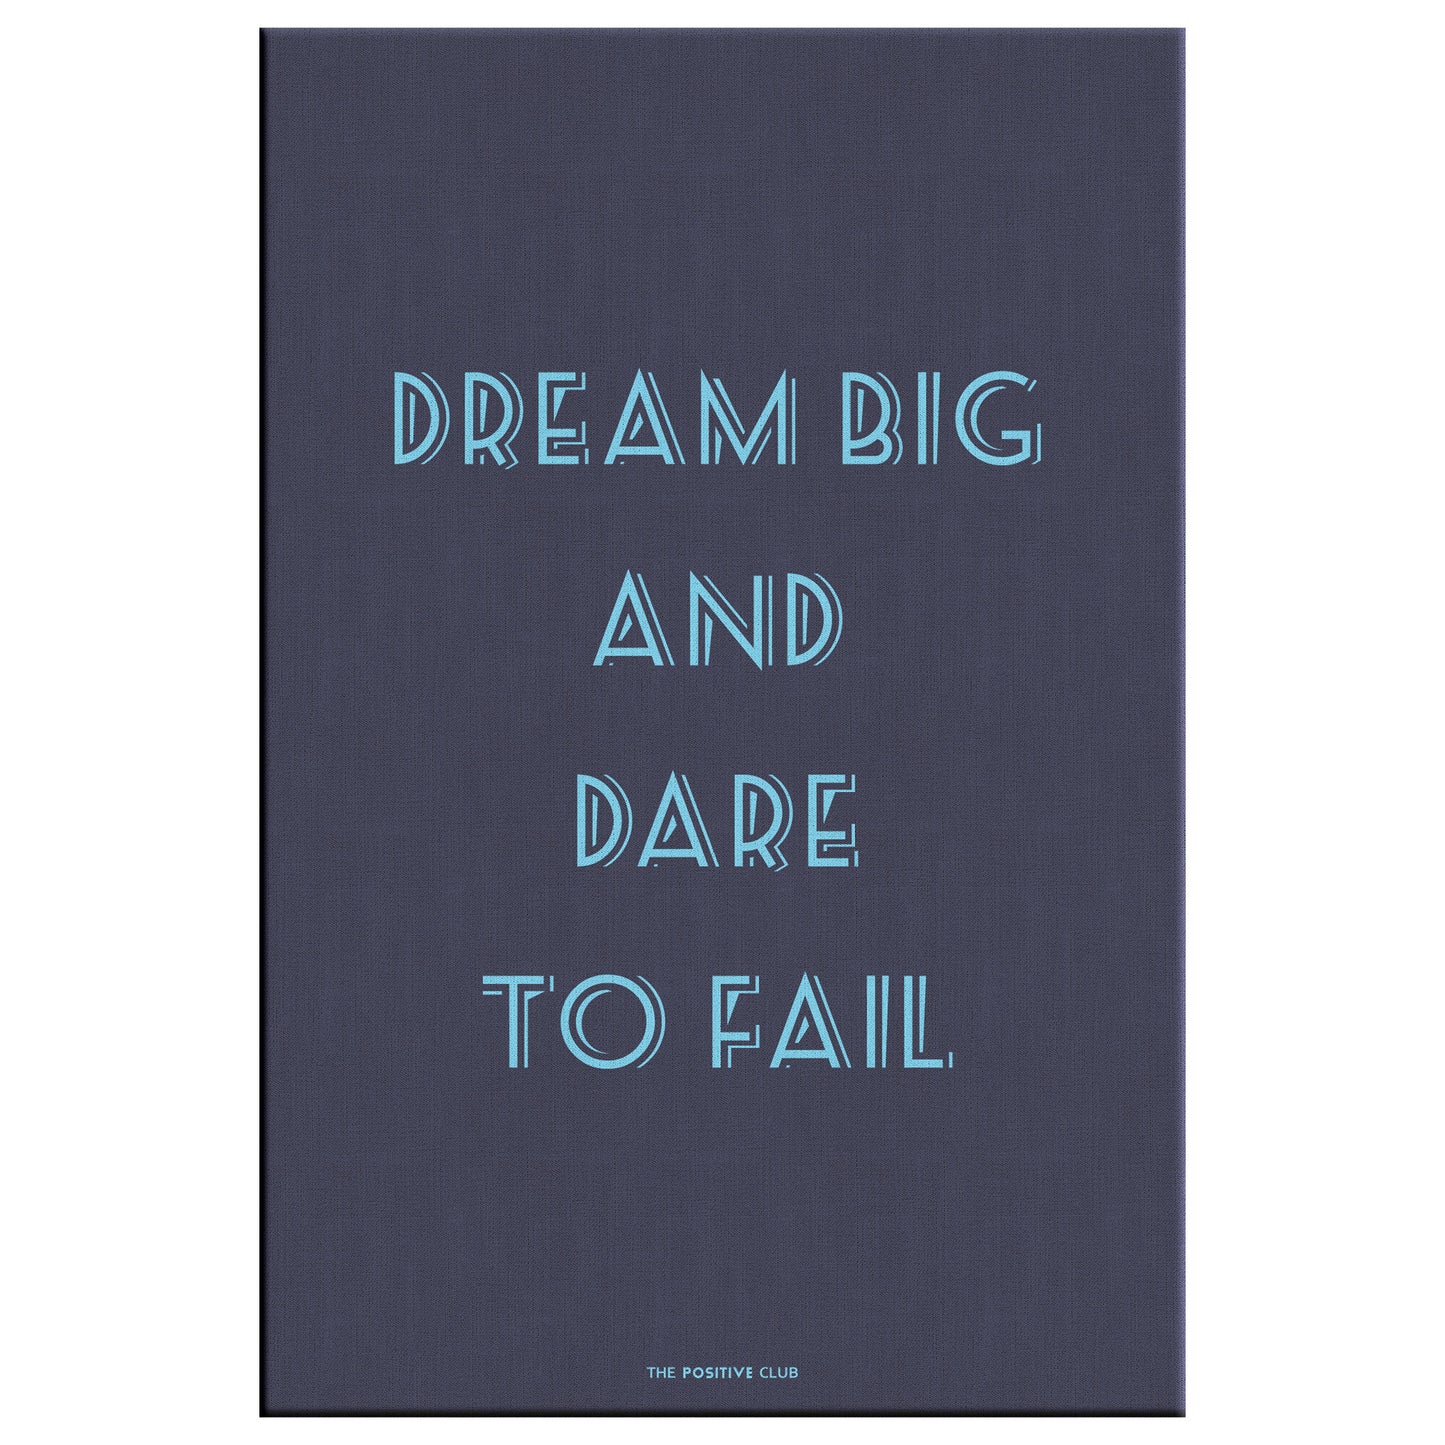 DREAM BIG AND DARE TO FAIL